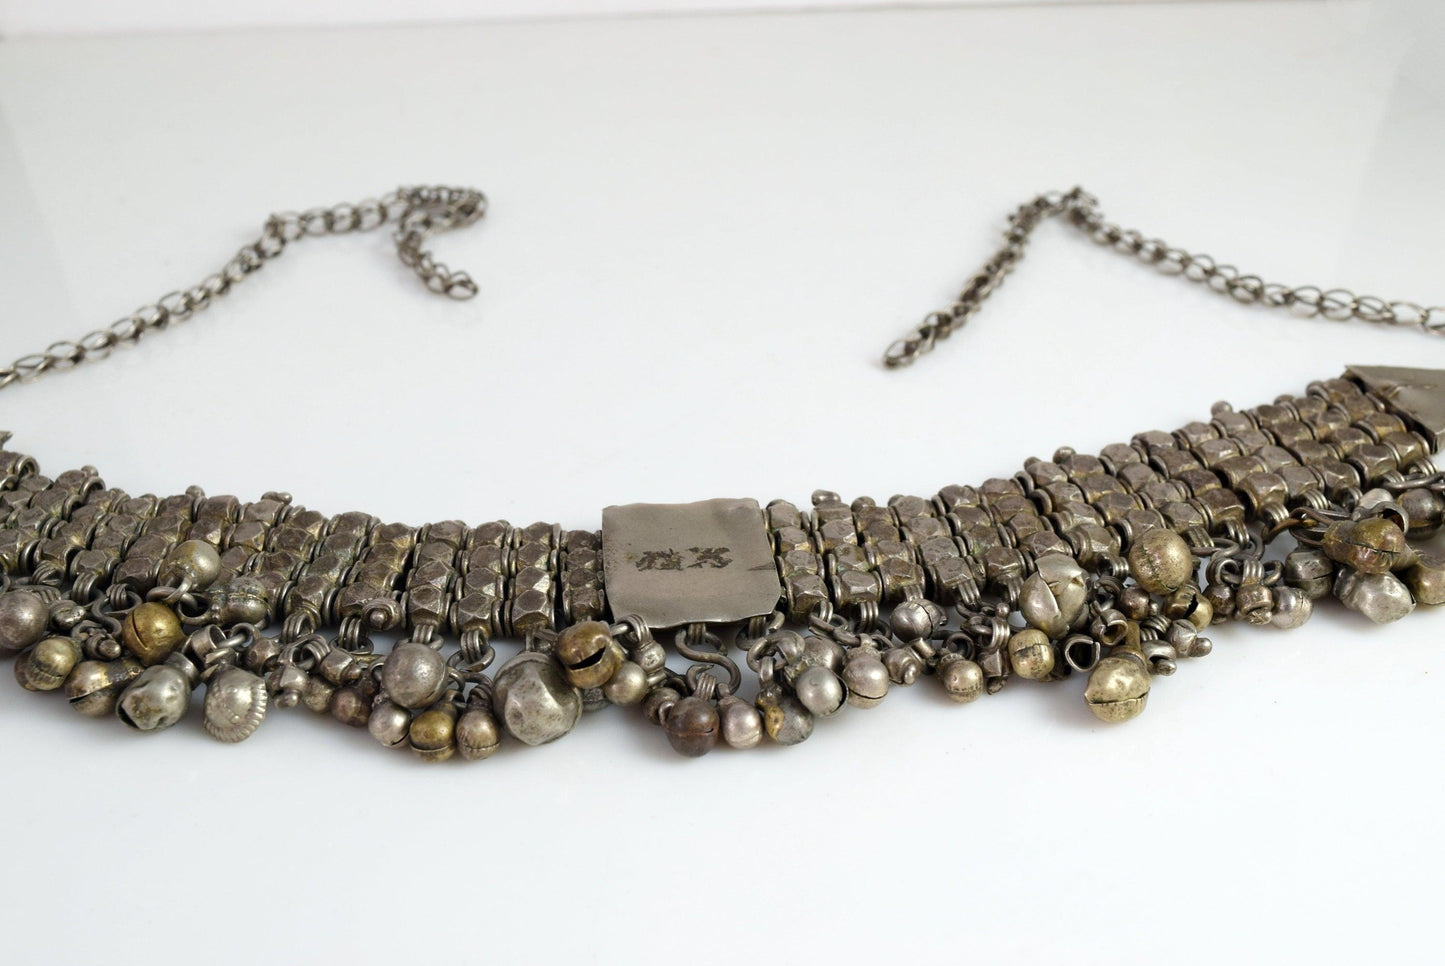 Bedouin necklace